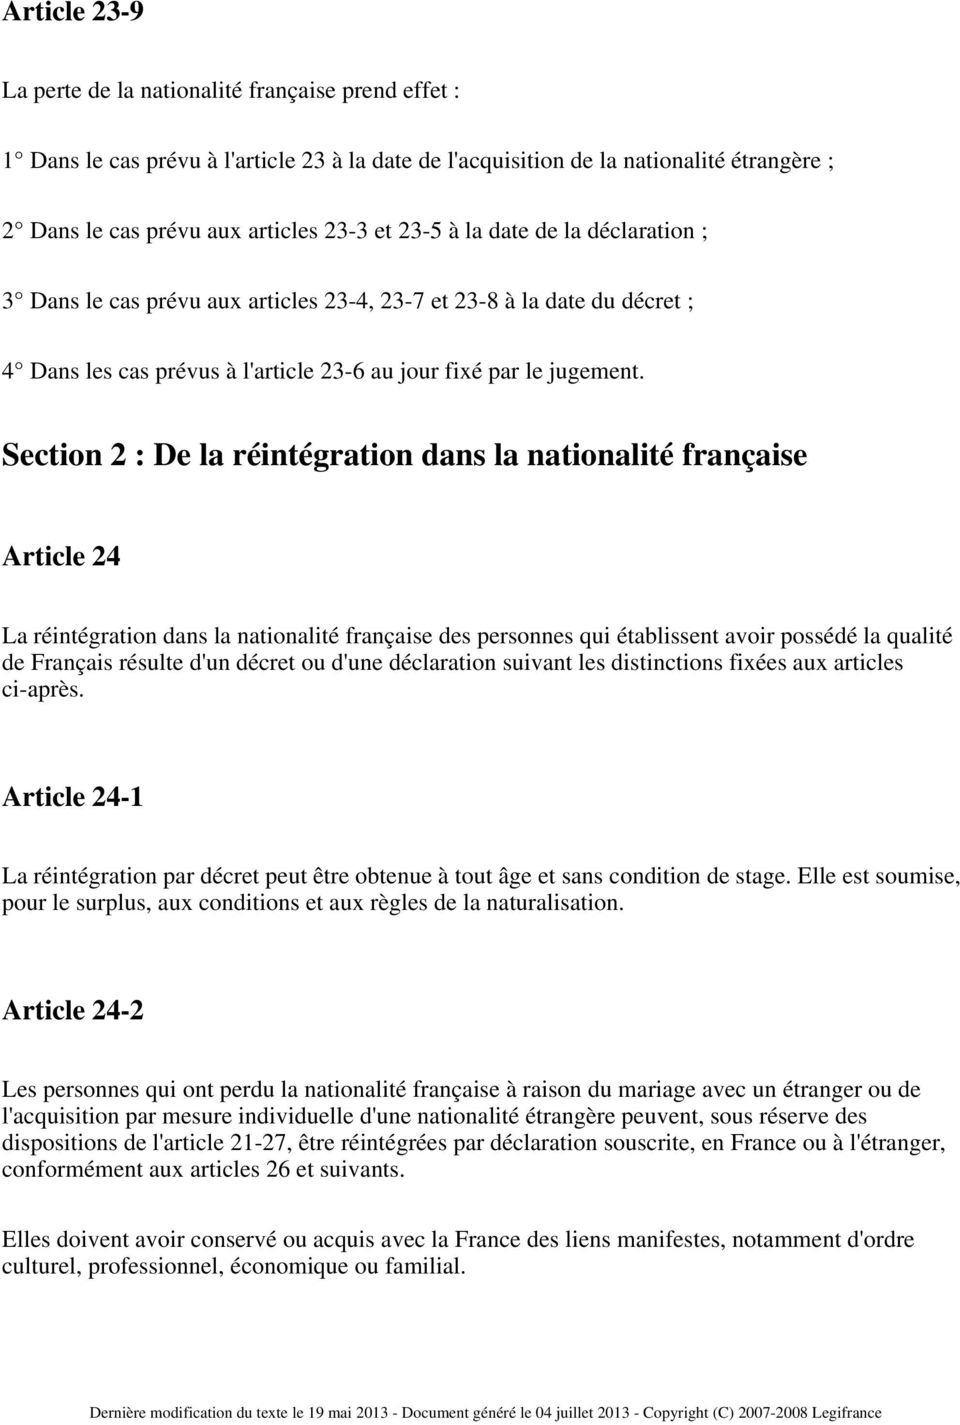 Section 2 : De la réintégration dans la nationalité française Article 24 La réintégration dans la nationalité française des personnes qui établissent avoir possédé la qualité de Français résulte d'un